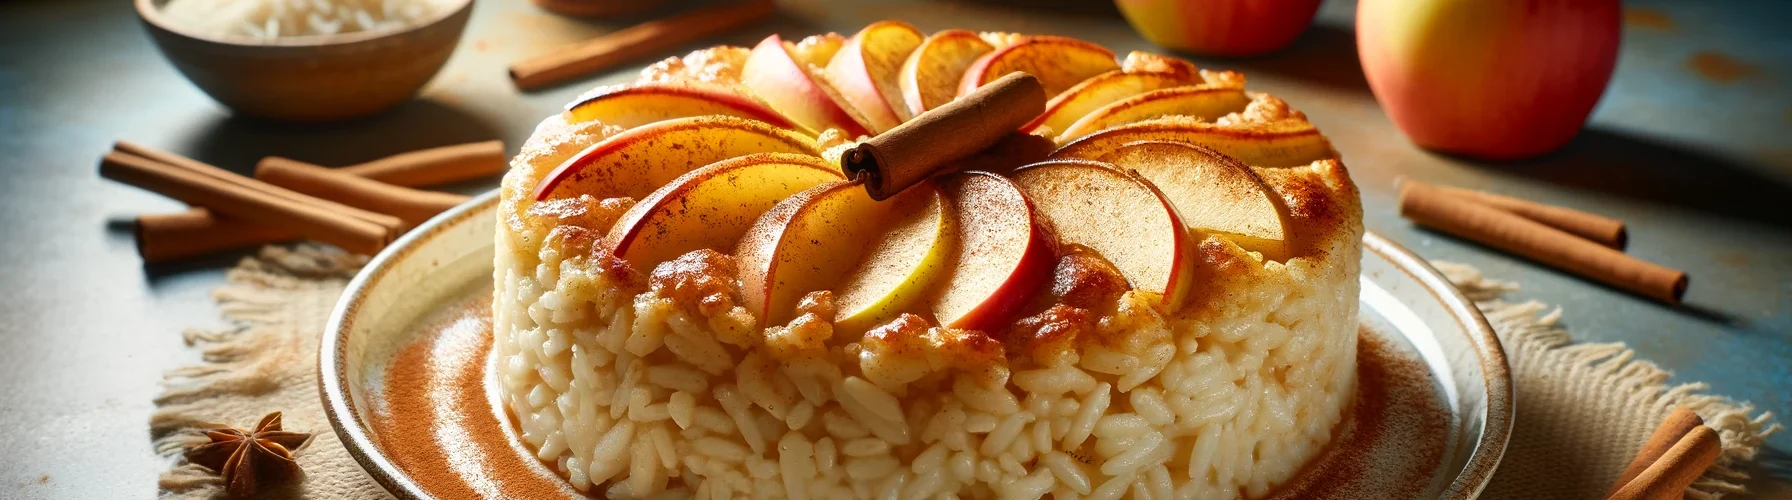 Рисовая бабка с яблоками: идеальный десерт